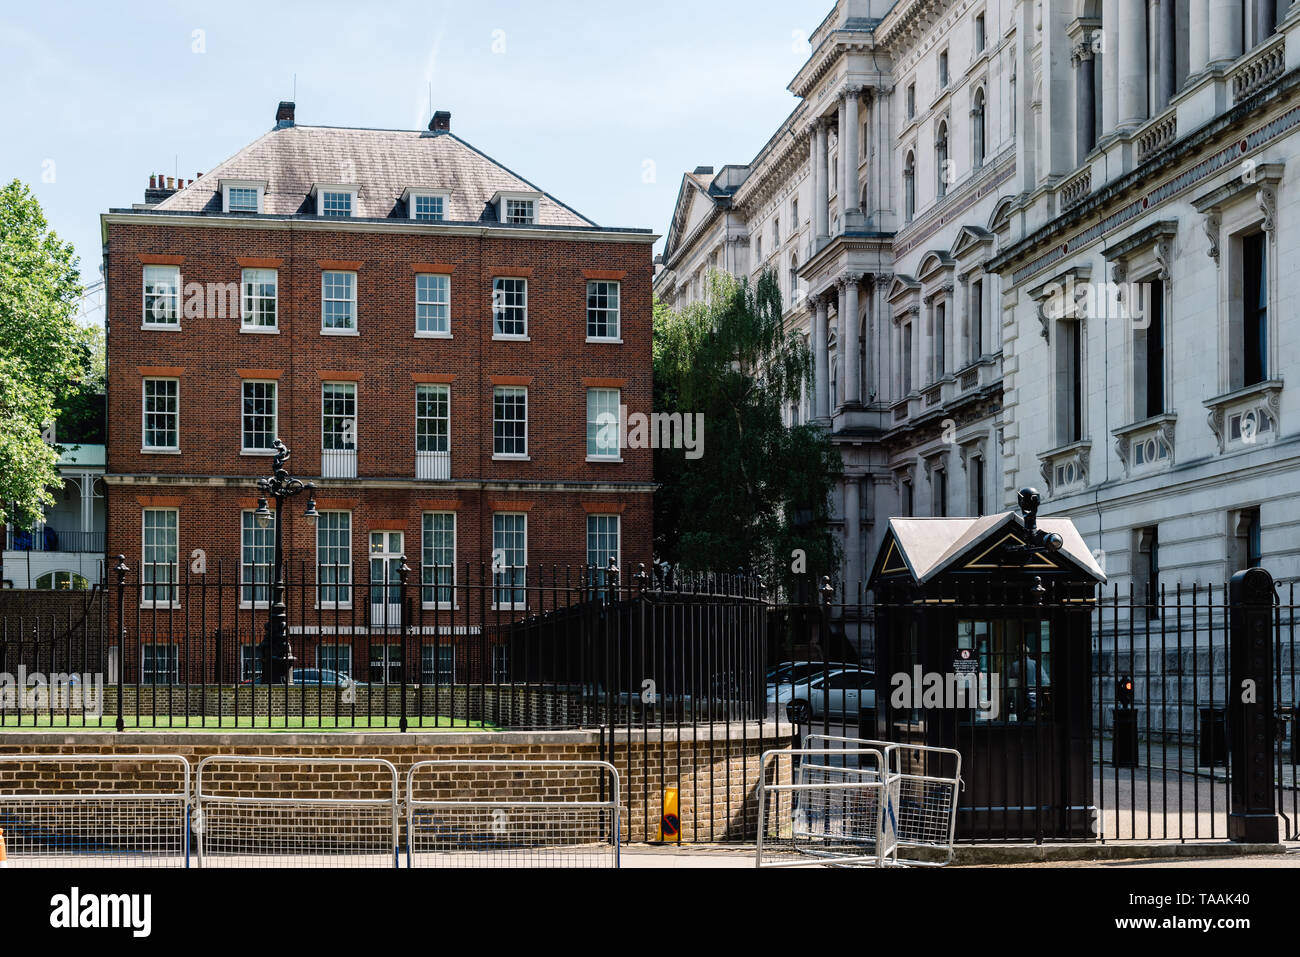 Londres, Reino Unido - 14 de mayo de 2019: puerta de entrada posterior al 10 de Downing Street, en la ciudad de Westminster, Londres, Reino Unido. El 10 de Downing Street es la residencia de t Foto de stock